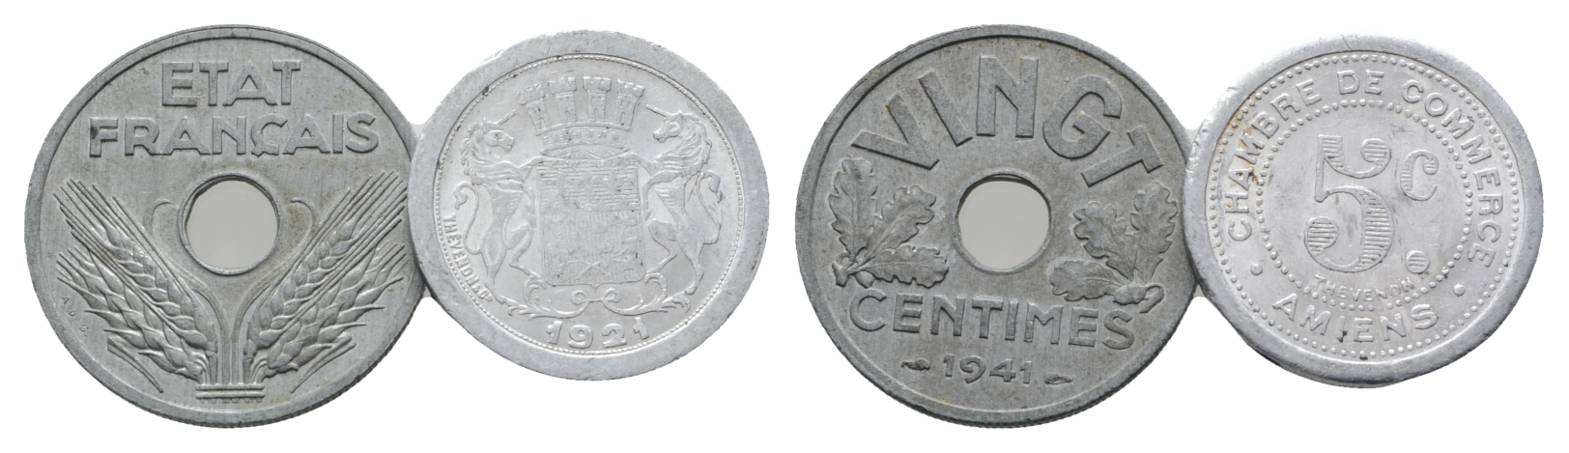  Ausland; 2 Kleinmünzen (1941/1921)   